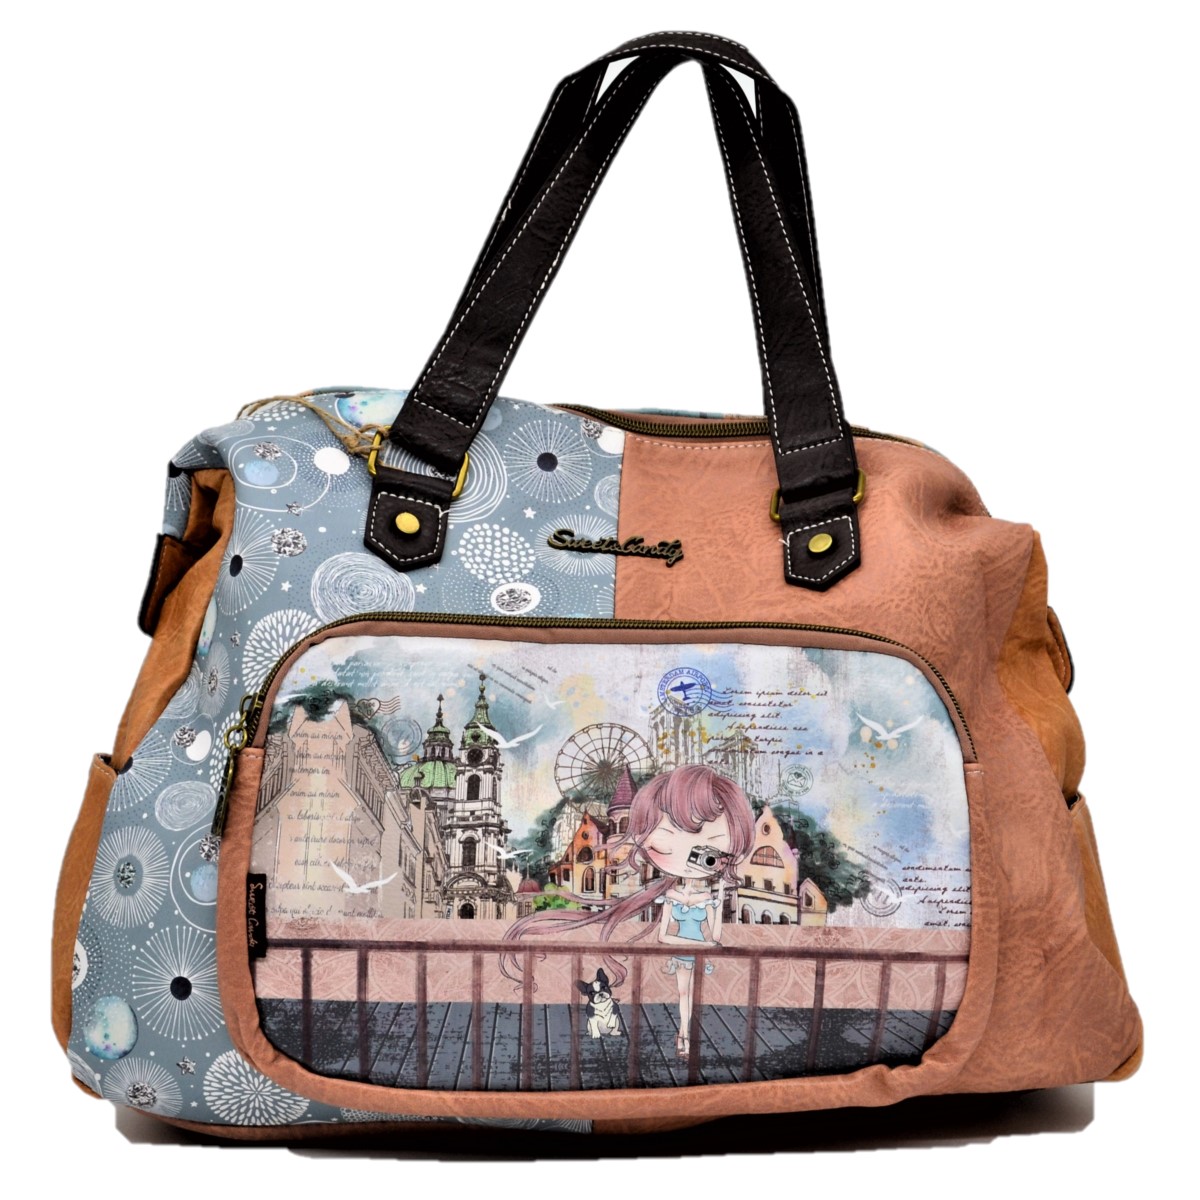 Sweet Candy shopper táska, utazótáska 45 cm - Turista